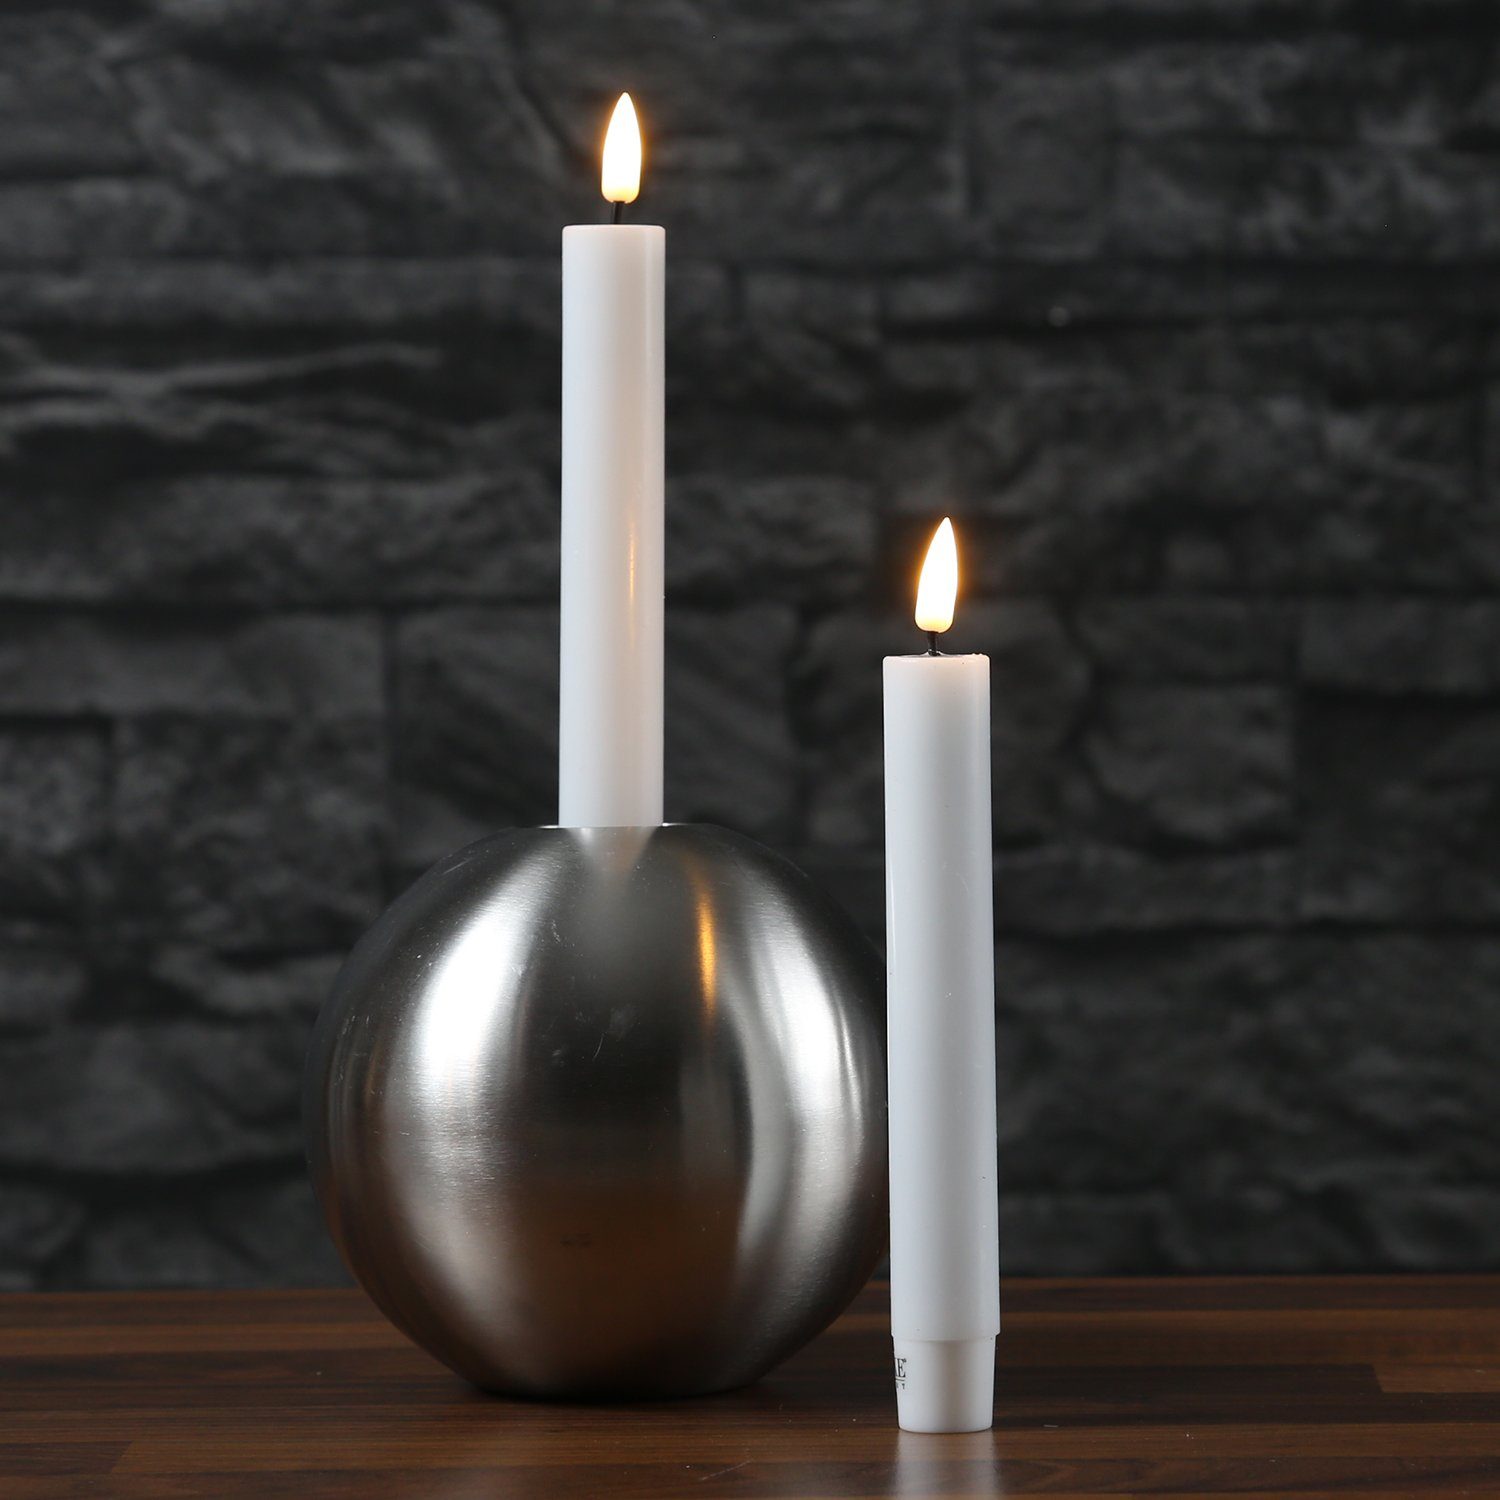 Deluxe Homeart LED-Kerze »LED Stabkerzen Mia Tafelkerzen Echtwachs 3D  Flamme flackernd H: 15cm weiß 2Stk« (2-tlg) online kaufen | OTTO